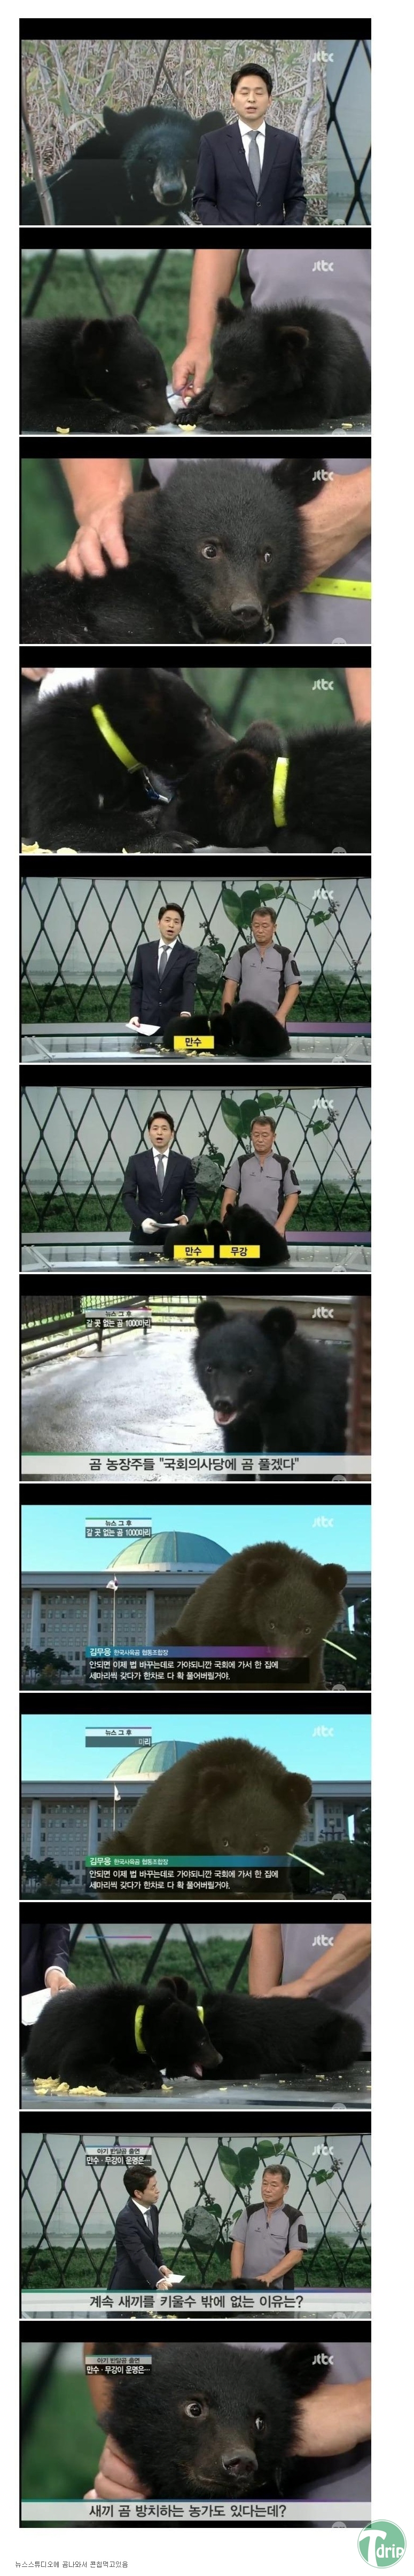 1b.jpg : CG로 모자란 JTBC 뉴스.JPG